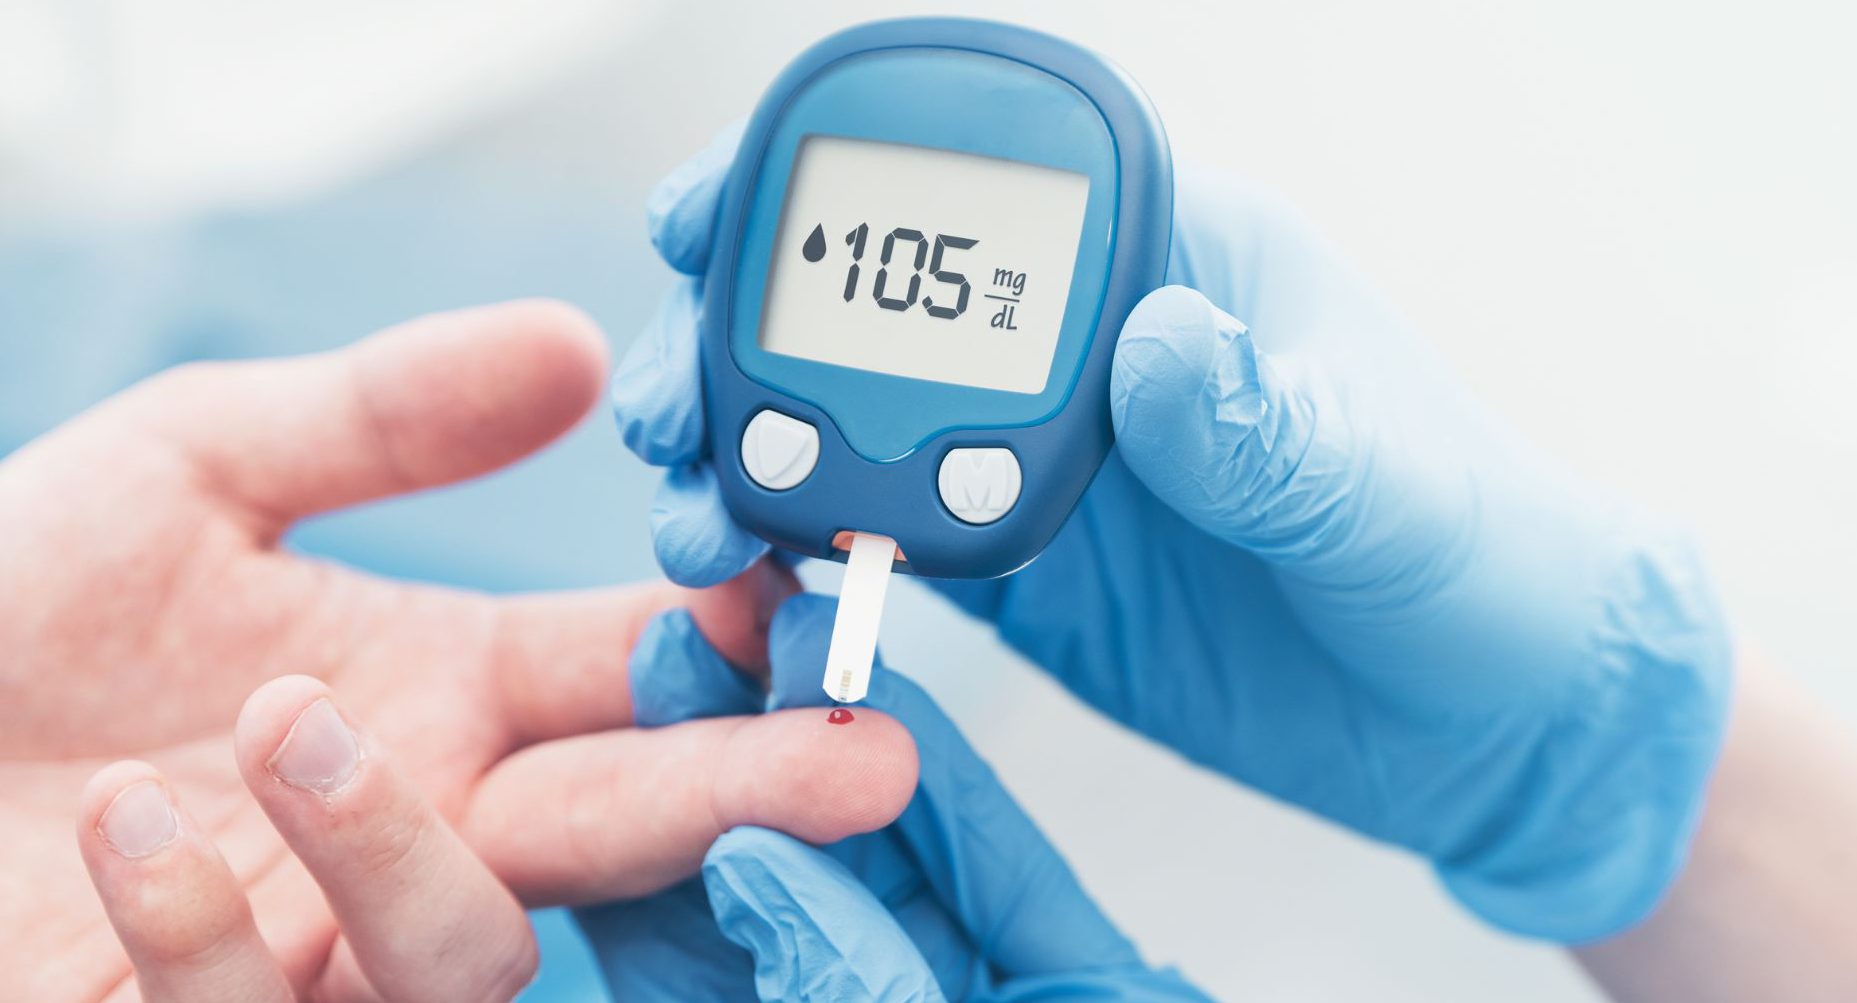 Diabetes Care Devices Market